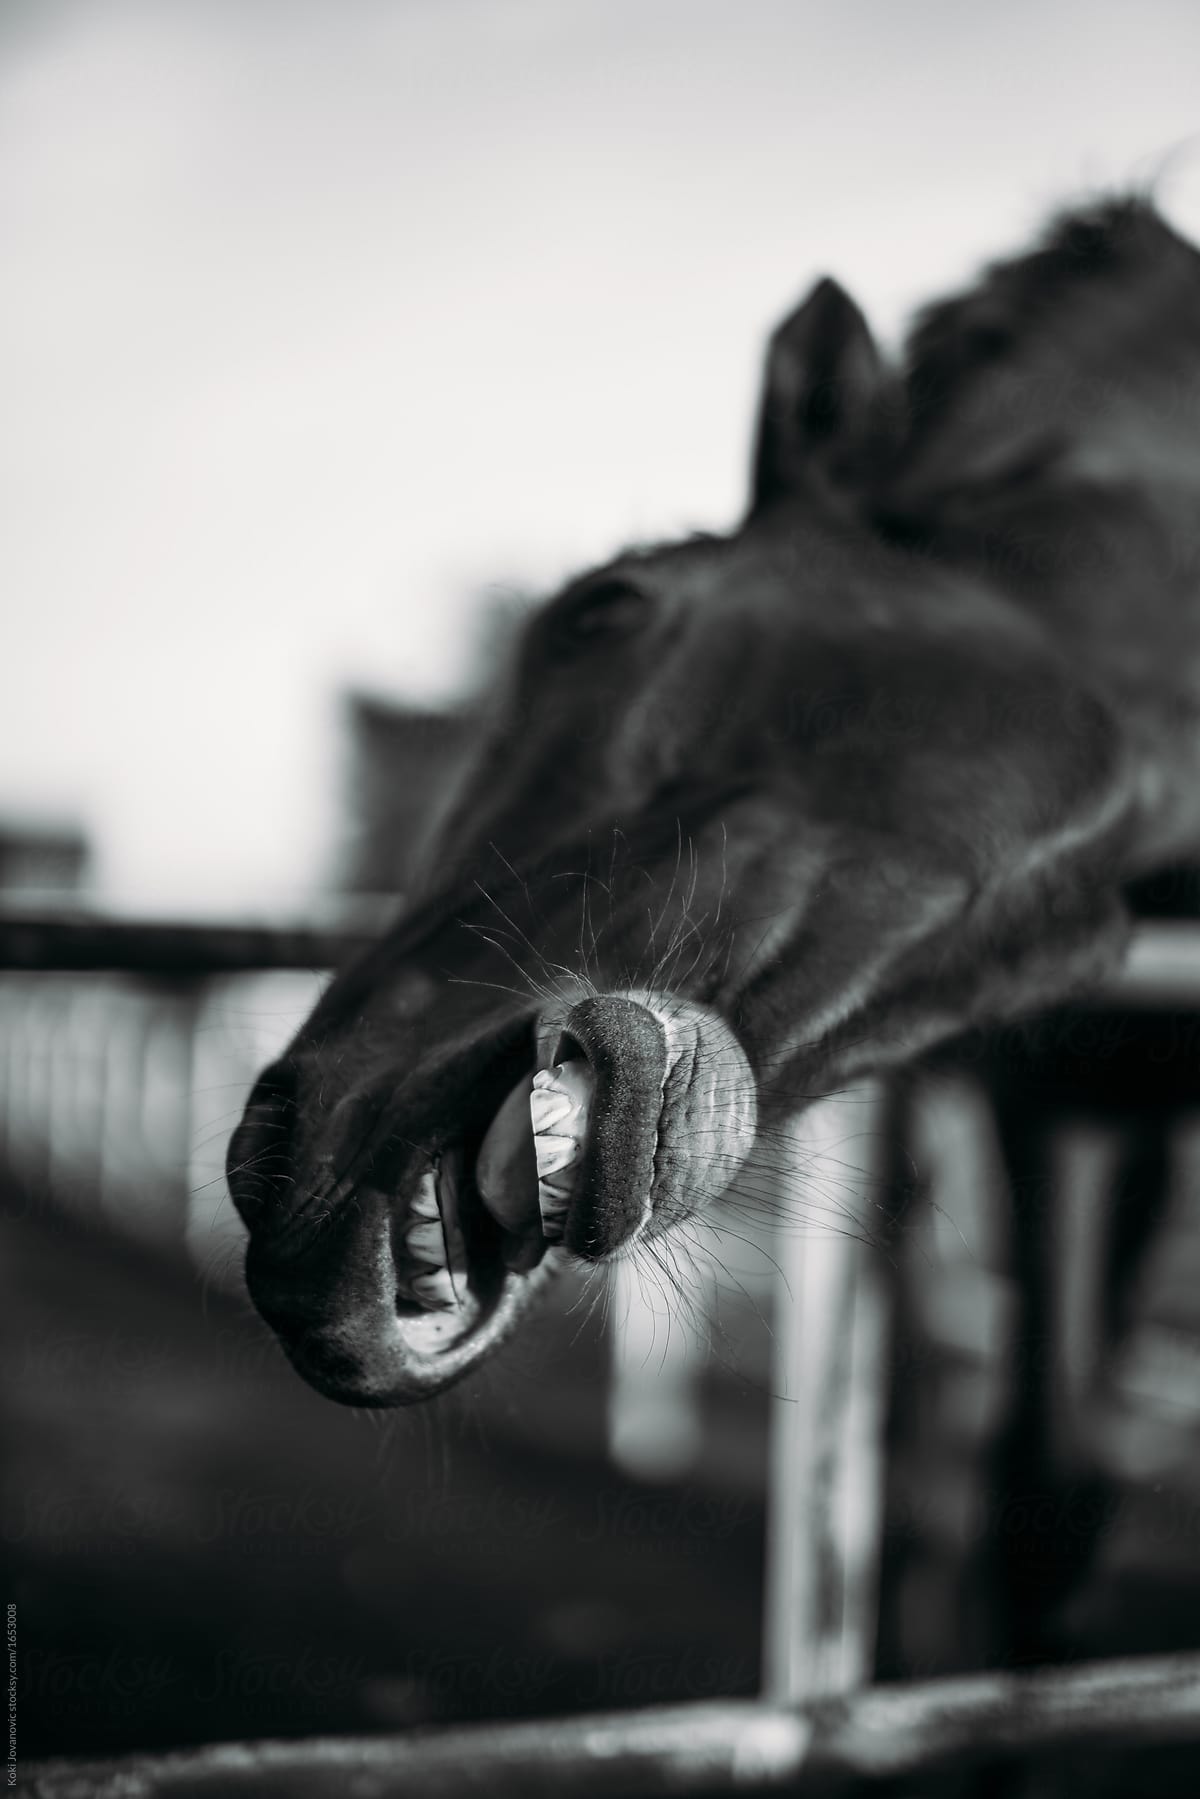 horse yawning like smiling